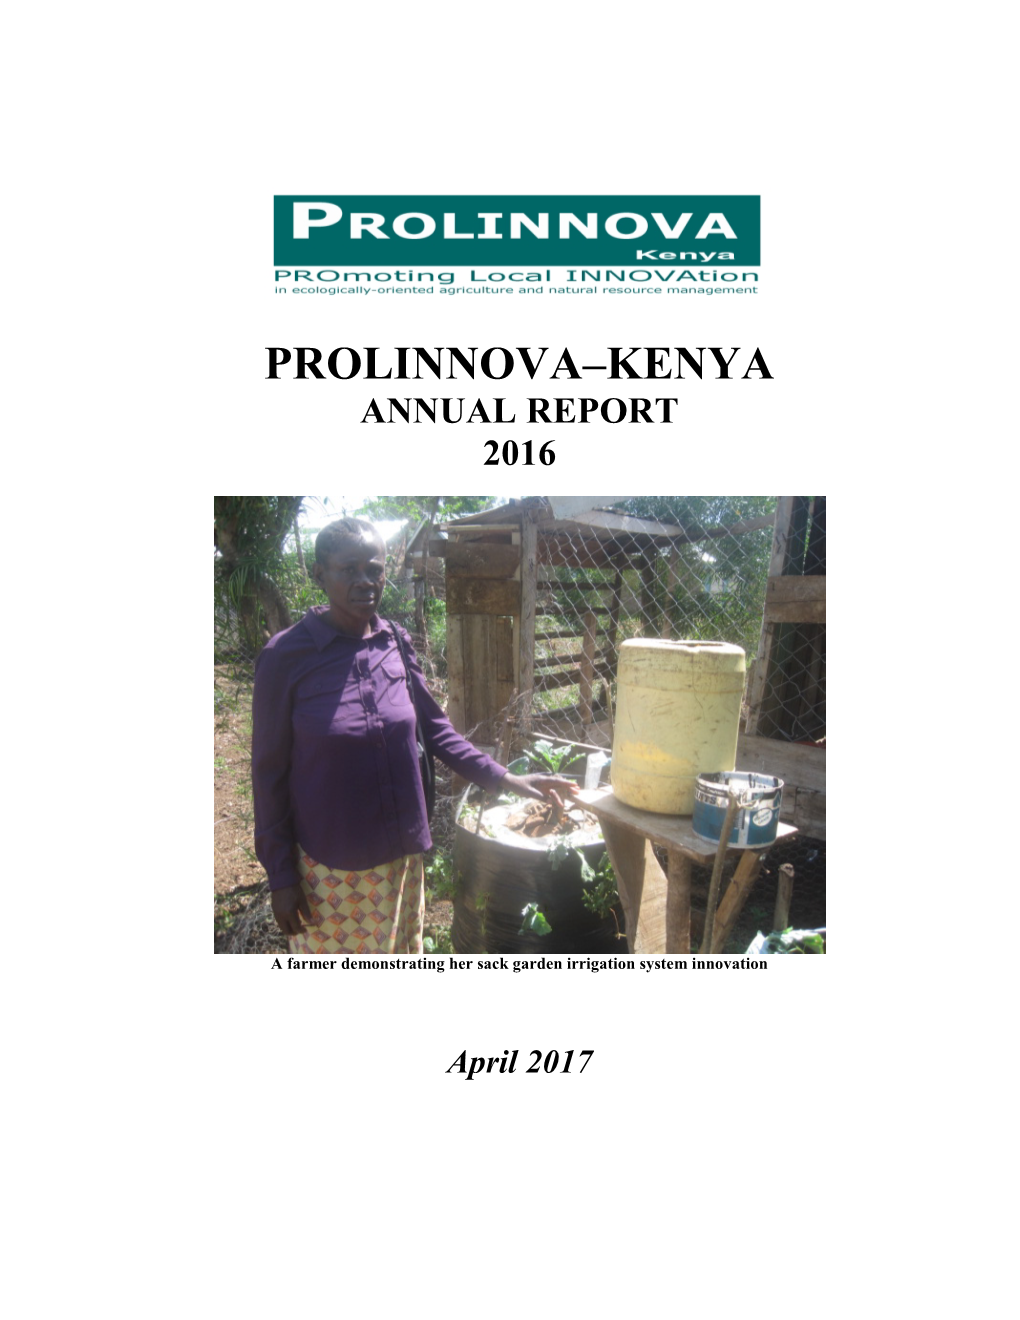 Prolinnova–Kenya Annual Report 2016